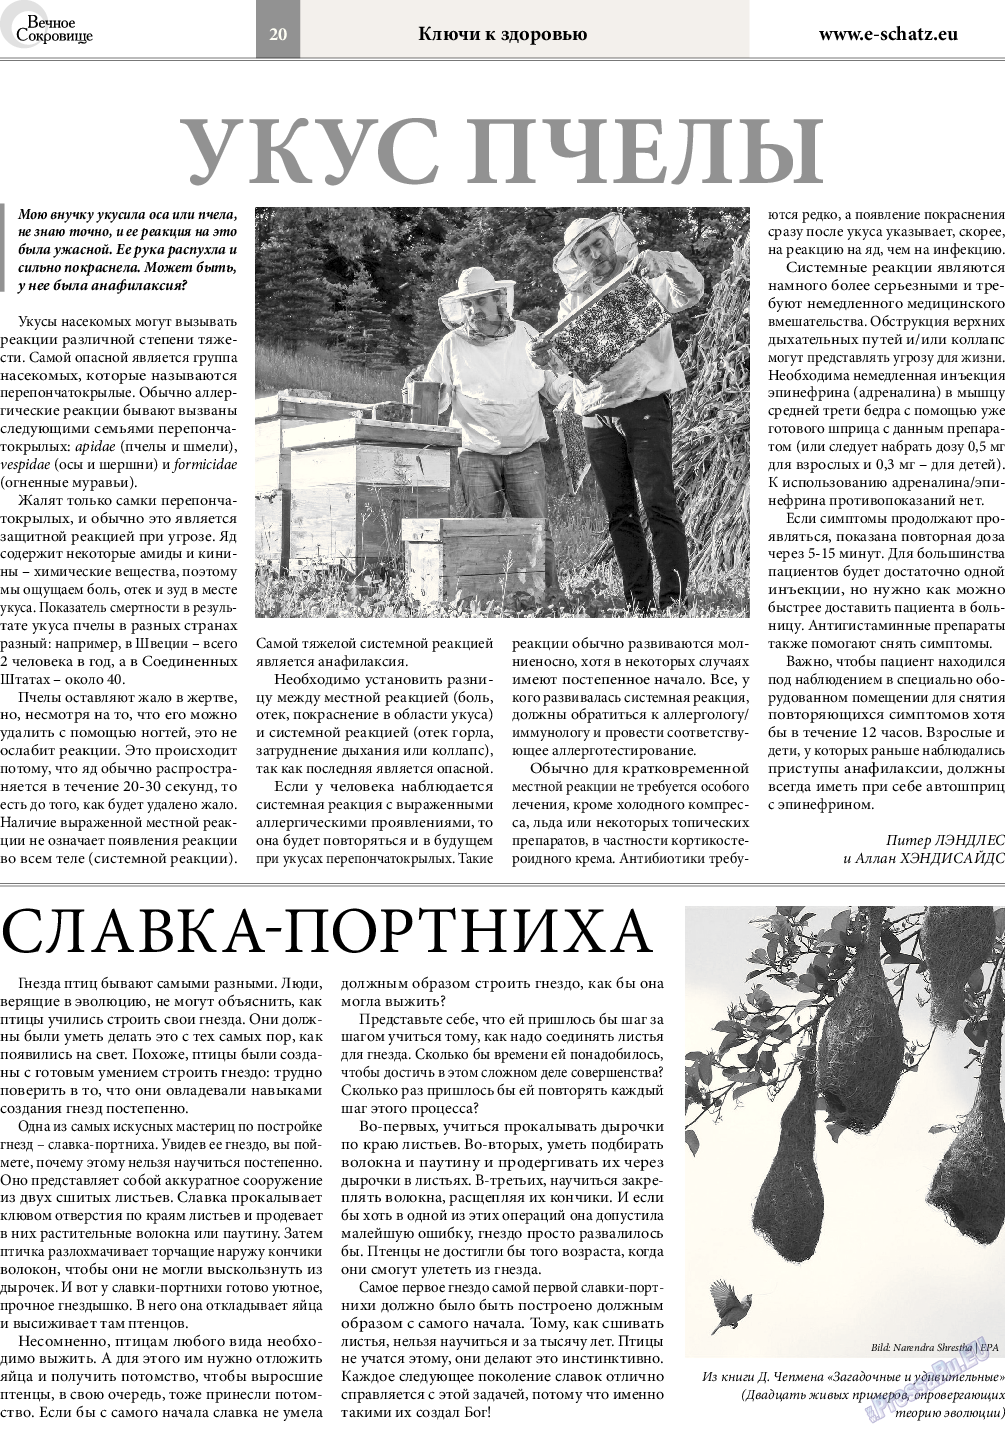 Вечное сокровище (газета). 2015 год, номер 4, стр. 20